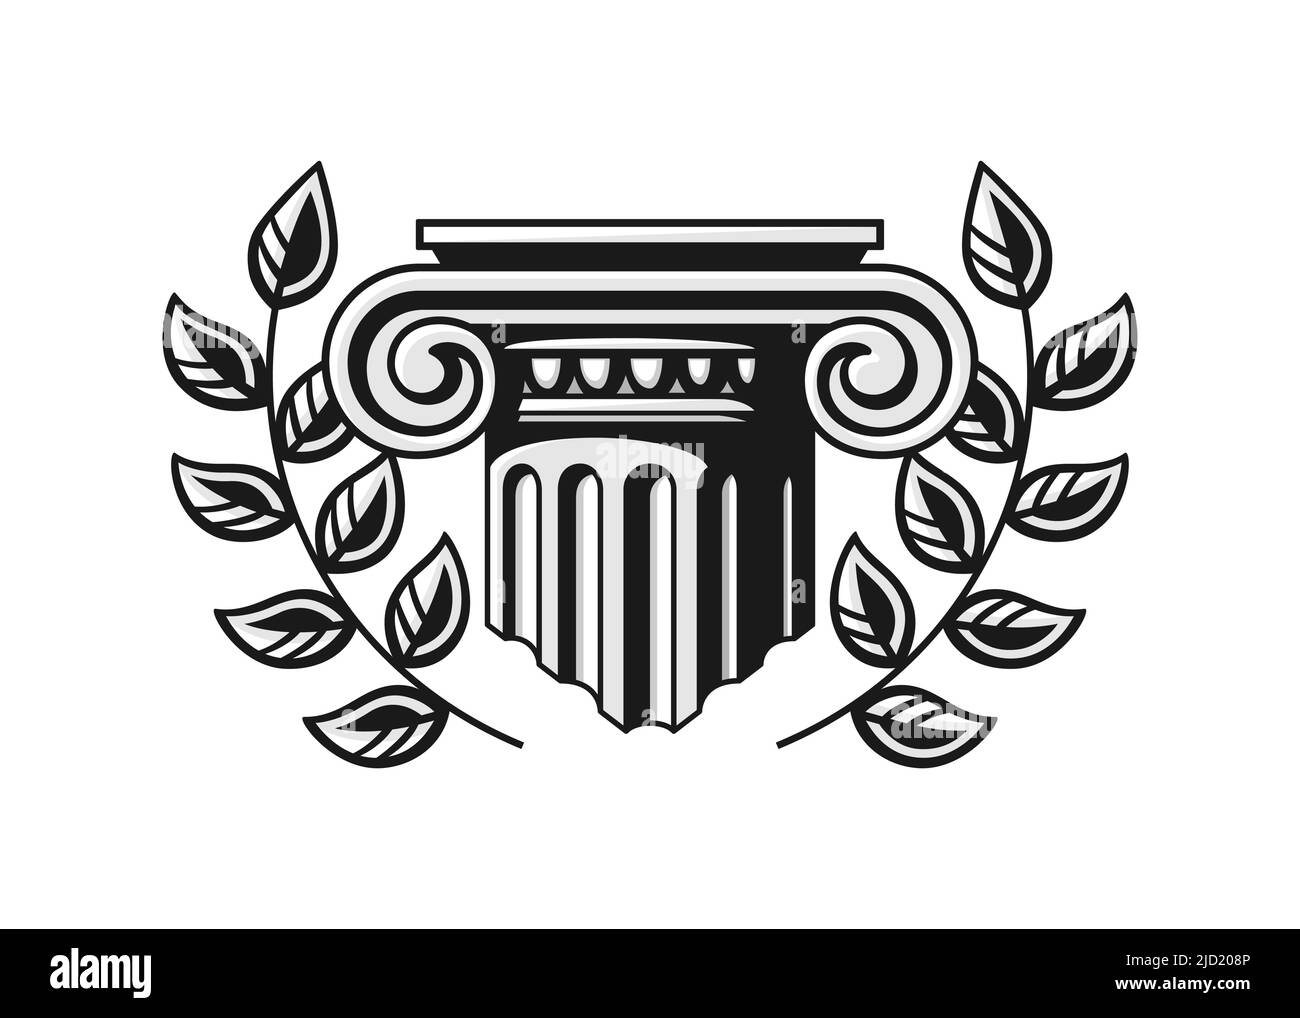 Pied de colonne ancien avec couronne. Logo vectoriel du cabinet d'avocats. Élément architectural. Isolé sur un fond blanc Illustration de Vecteur